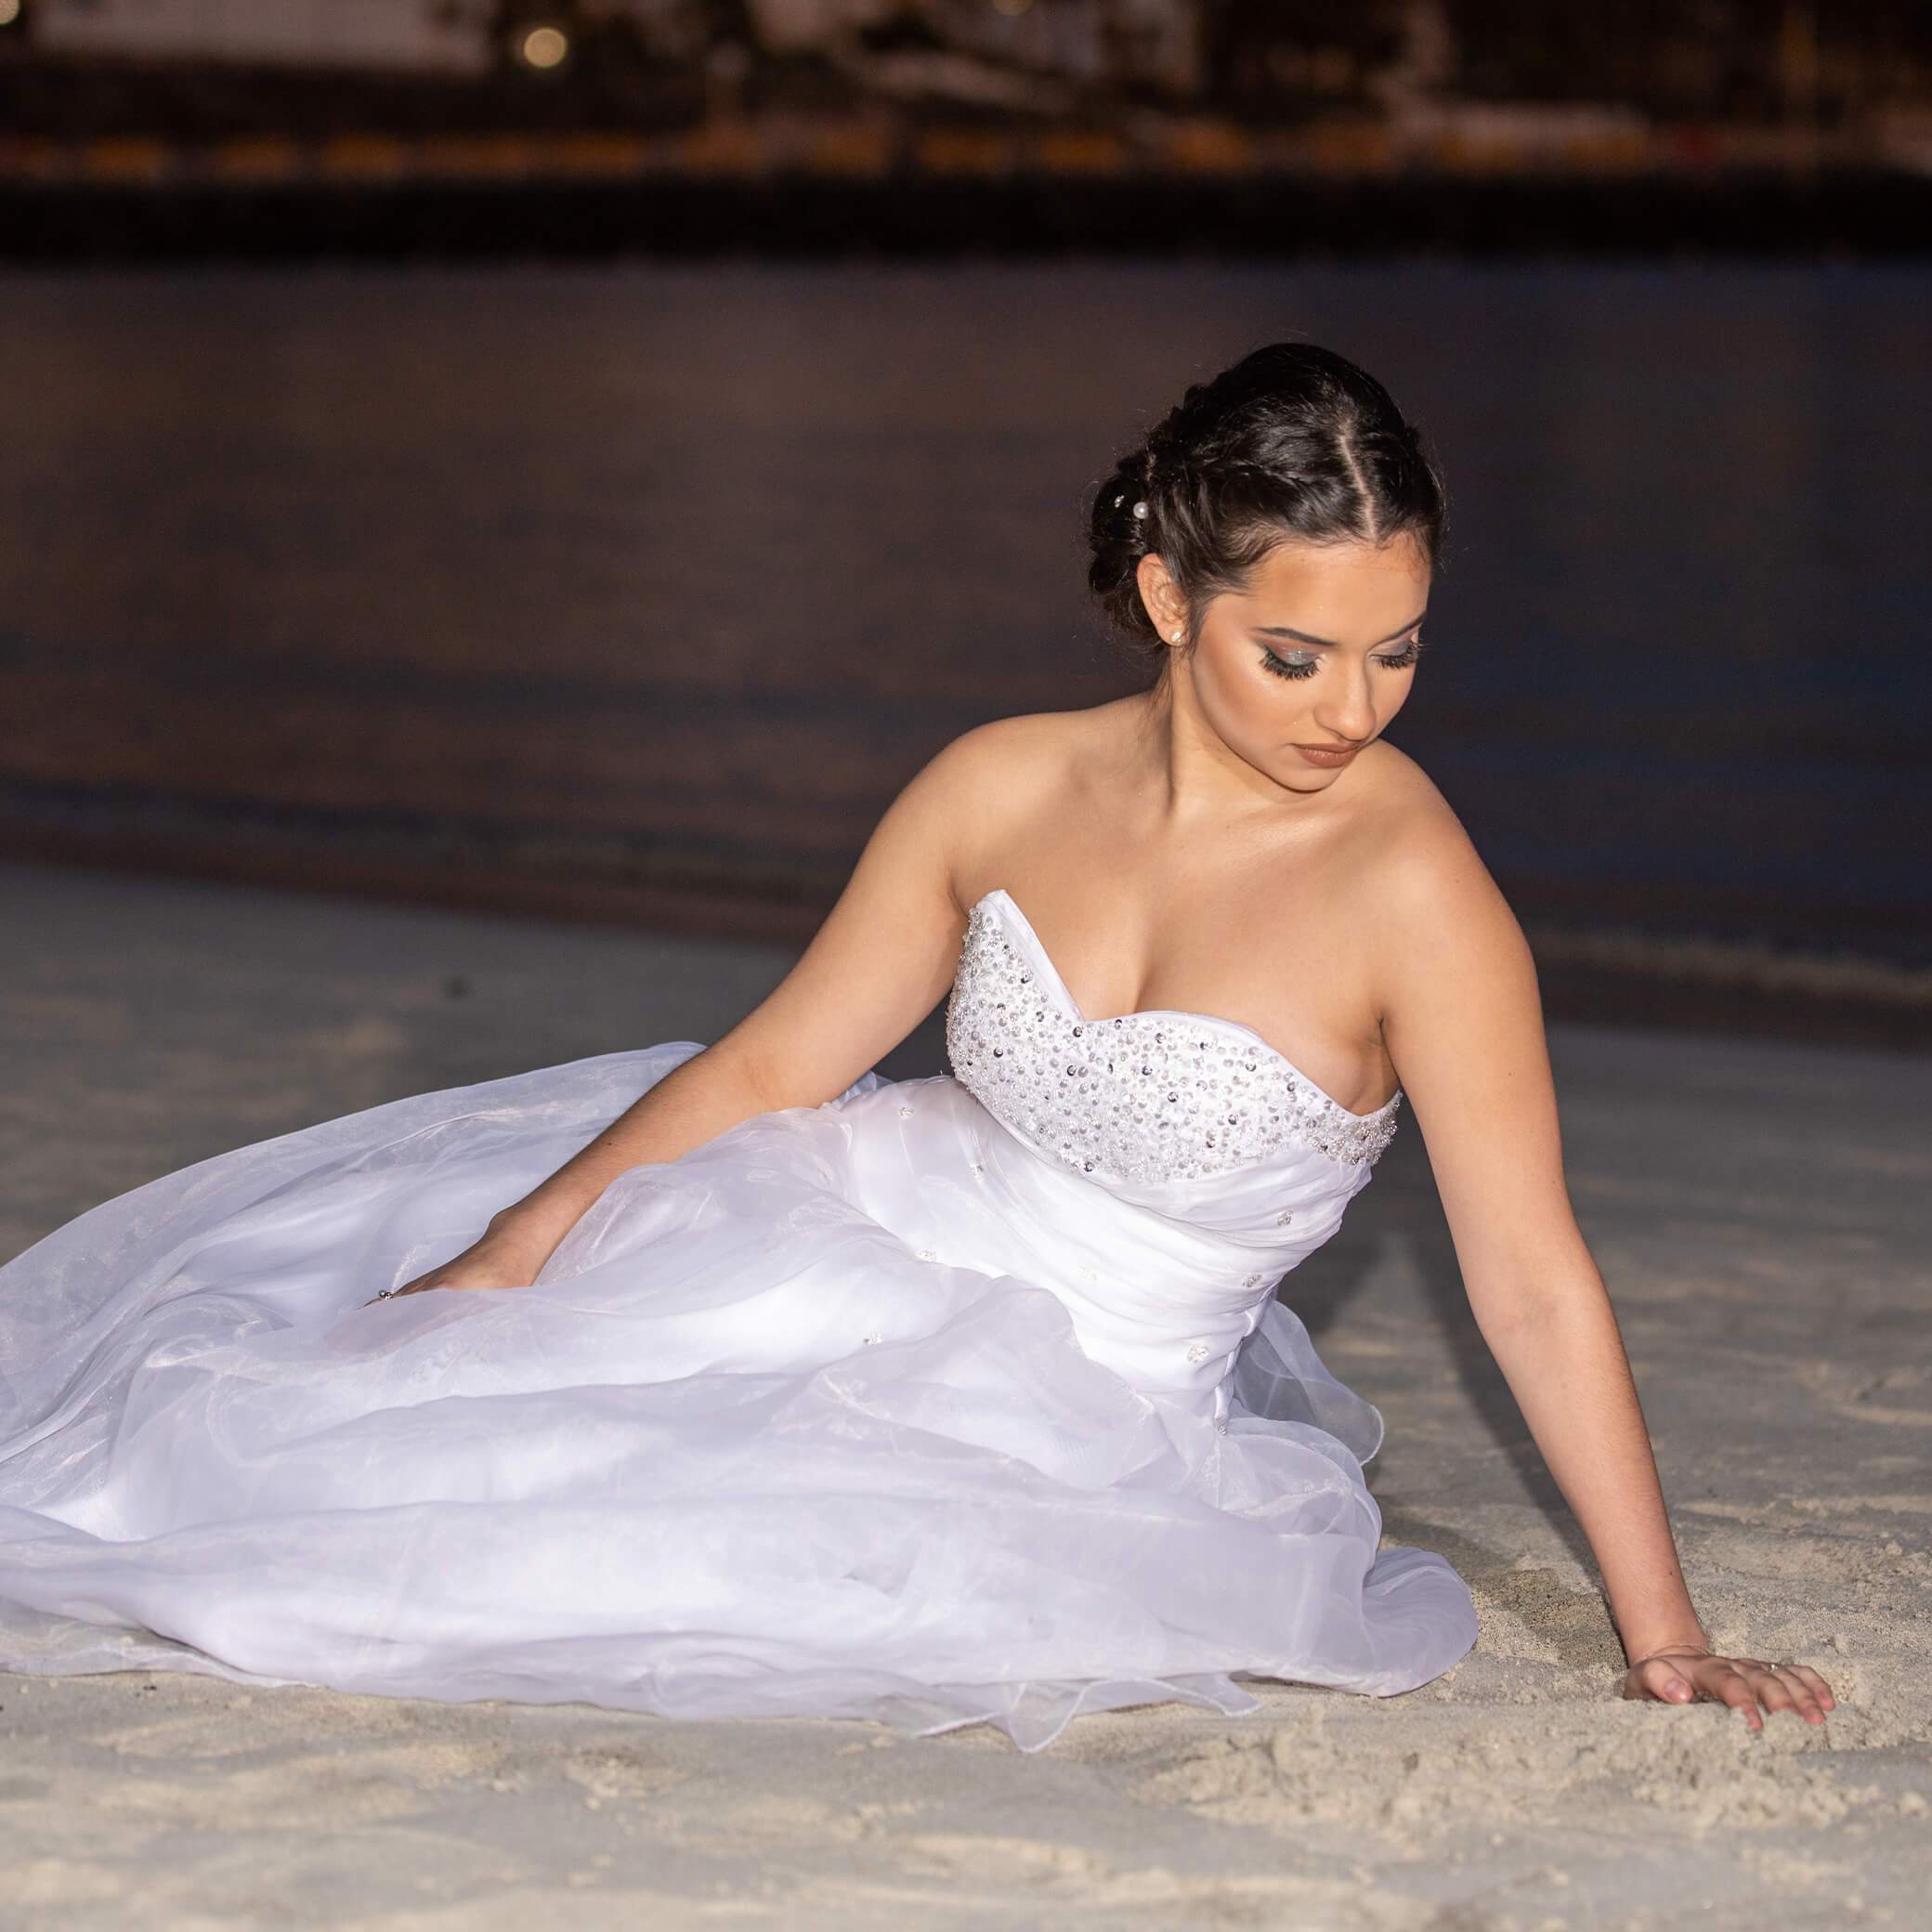 Foto de una chica vestida de blanco y sentada en la arena mientras es fotografiada